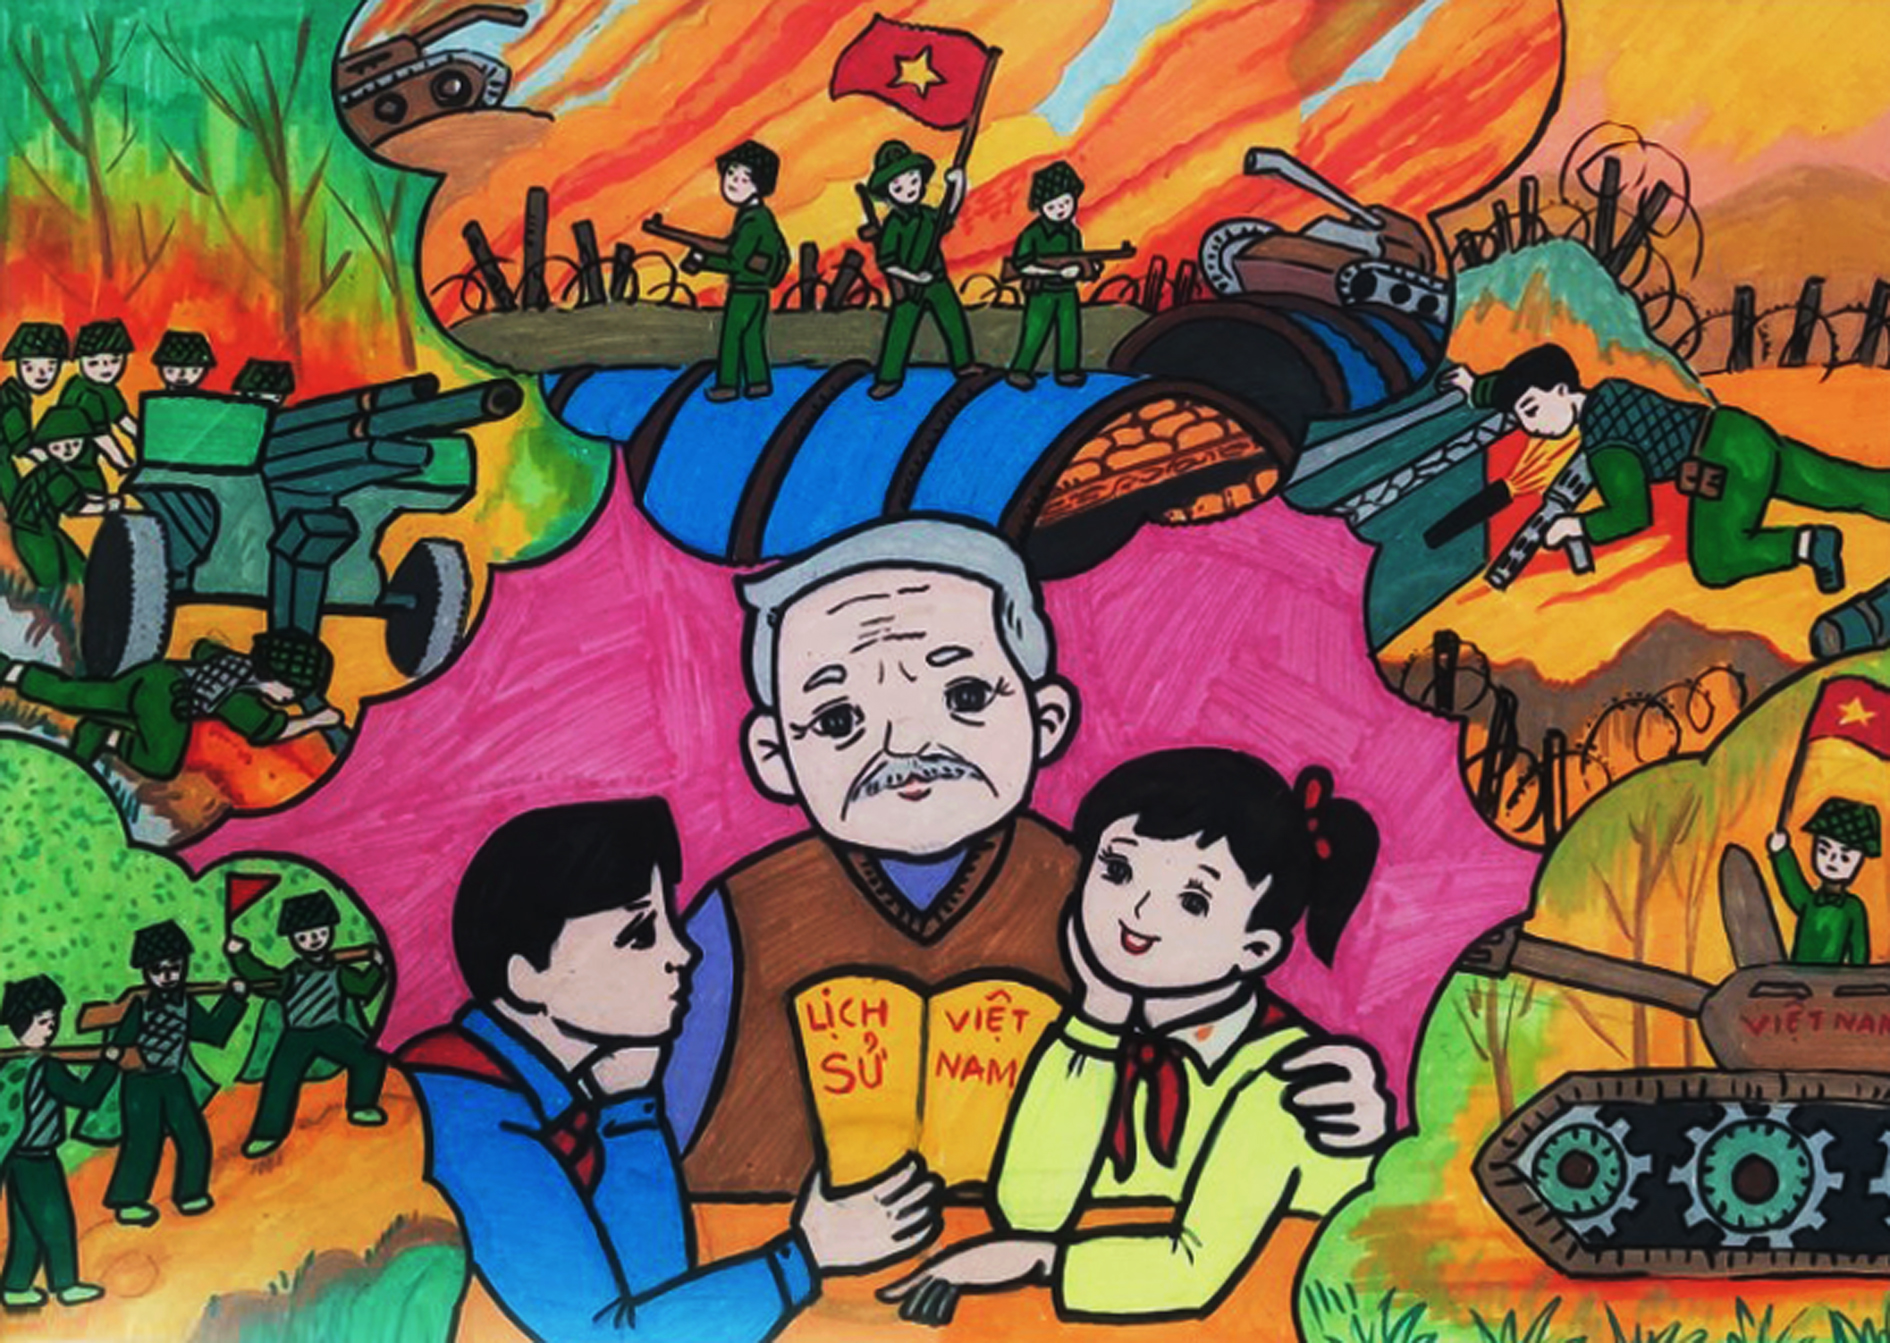 Image of Dien Bien Phu through children's drawings